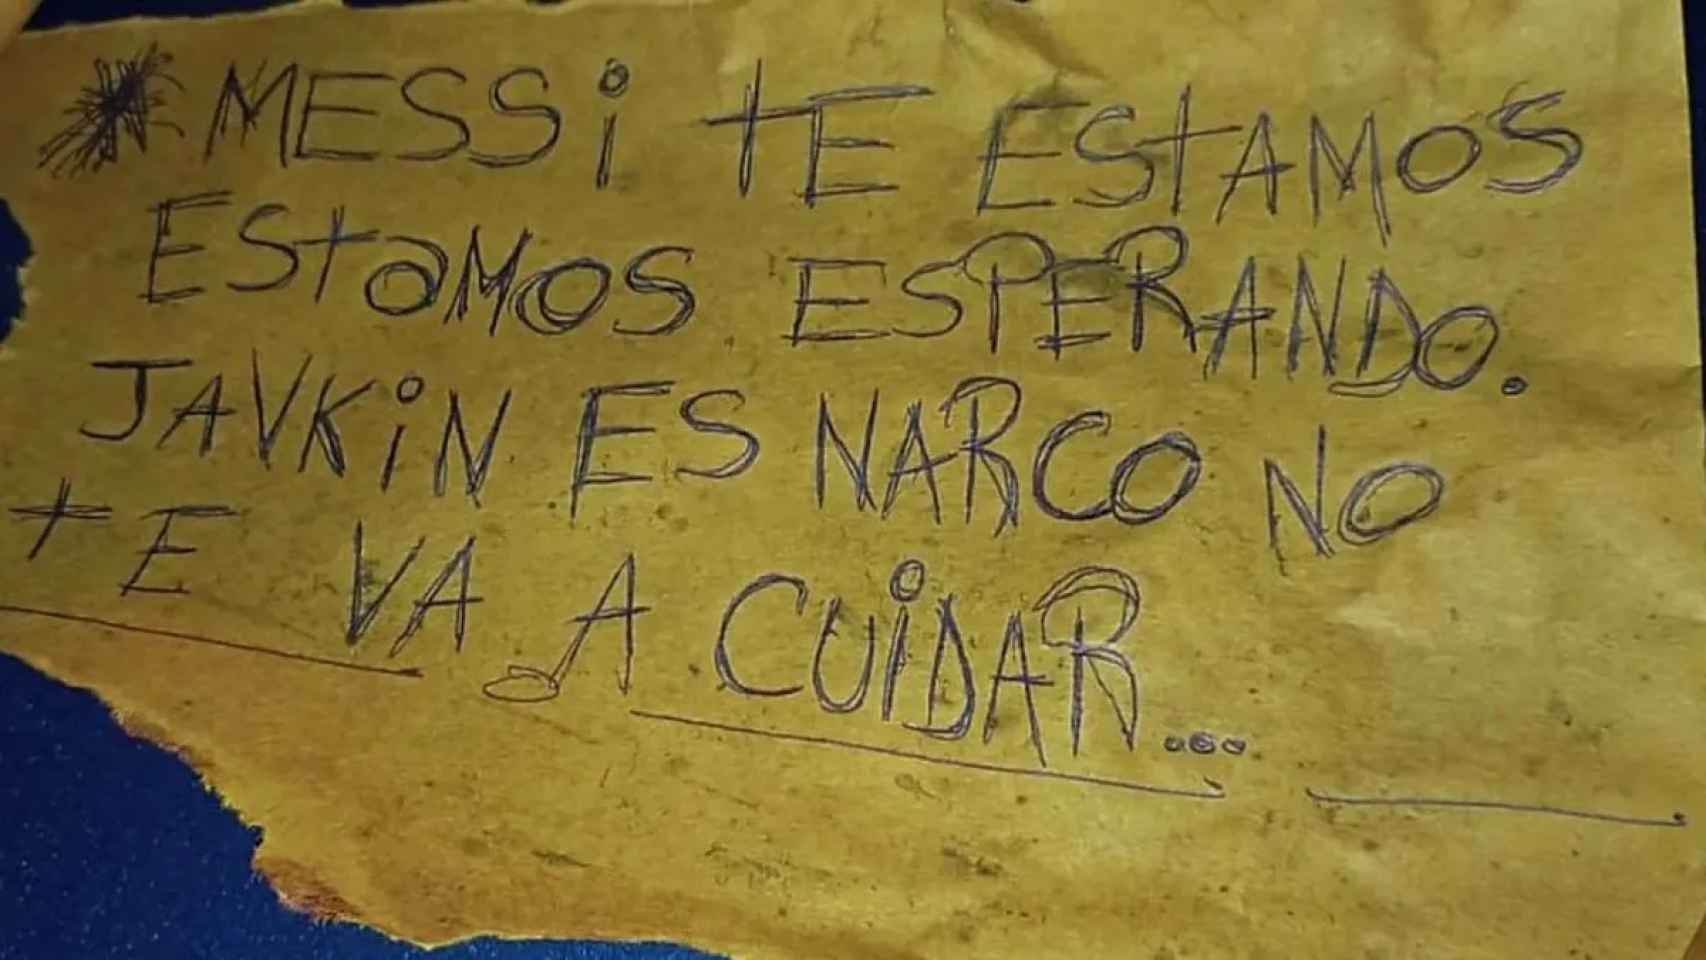 Mensaje con el que el narco rosarino trató de intimidar a Messi después de perpetrar un ataque en el supermercado de su familia política.